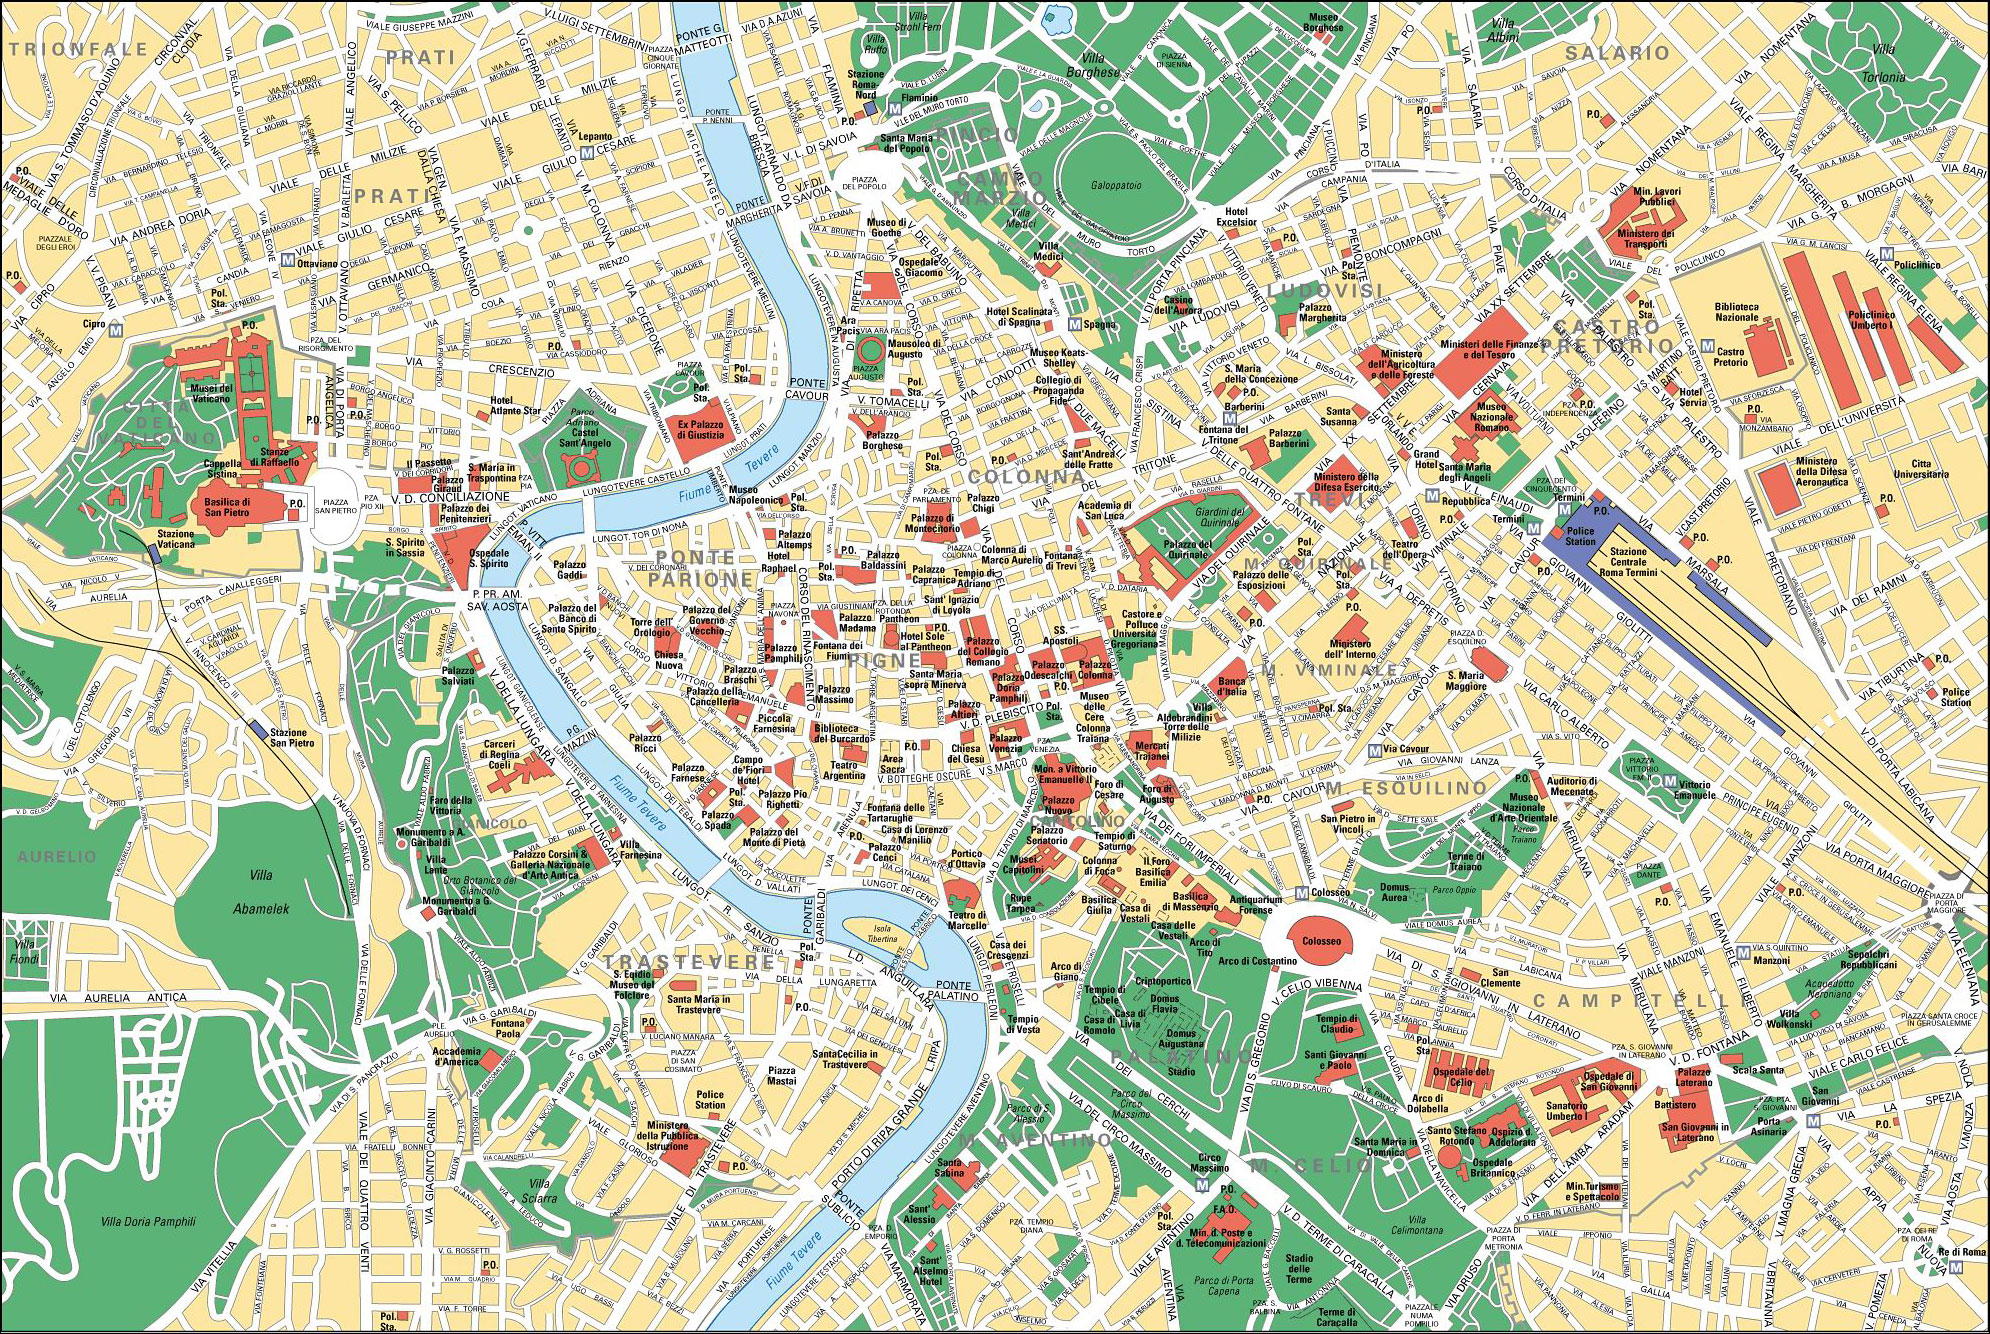 Touristischen karte von Rom : Sehenswürdigkeiten und Touren